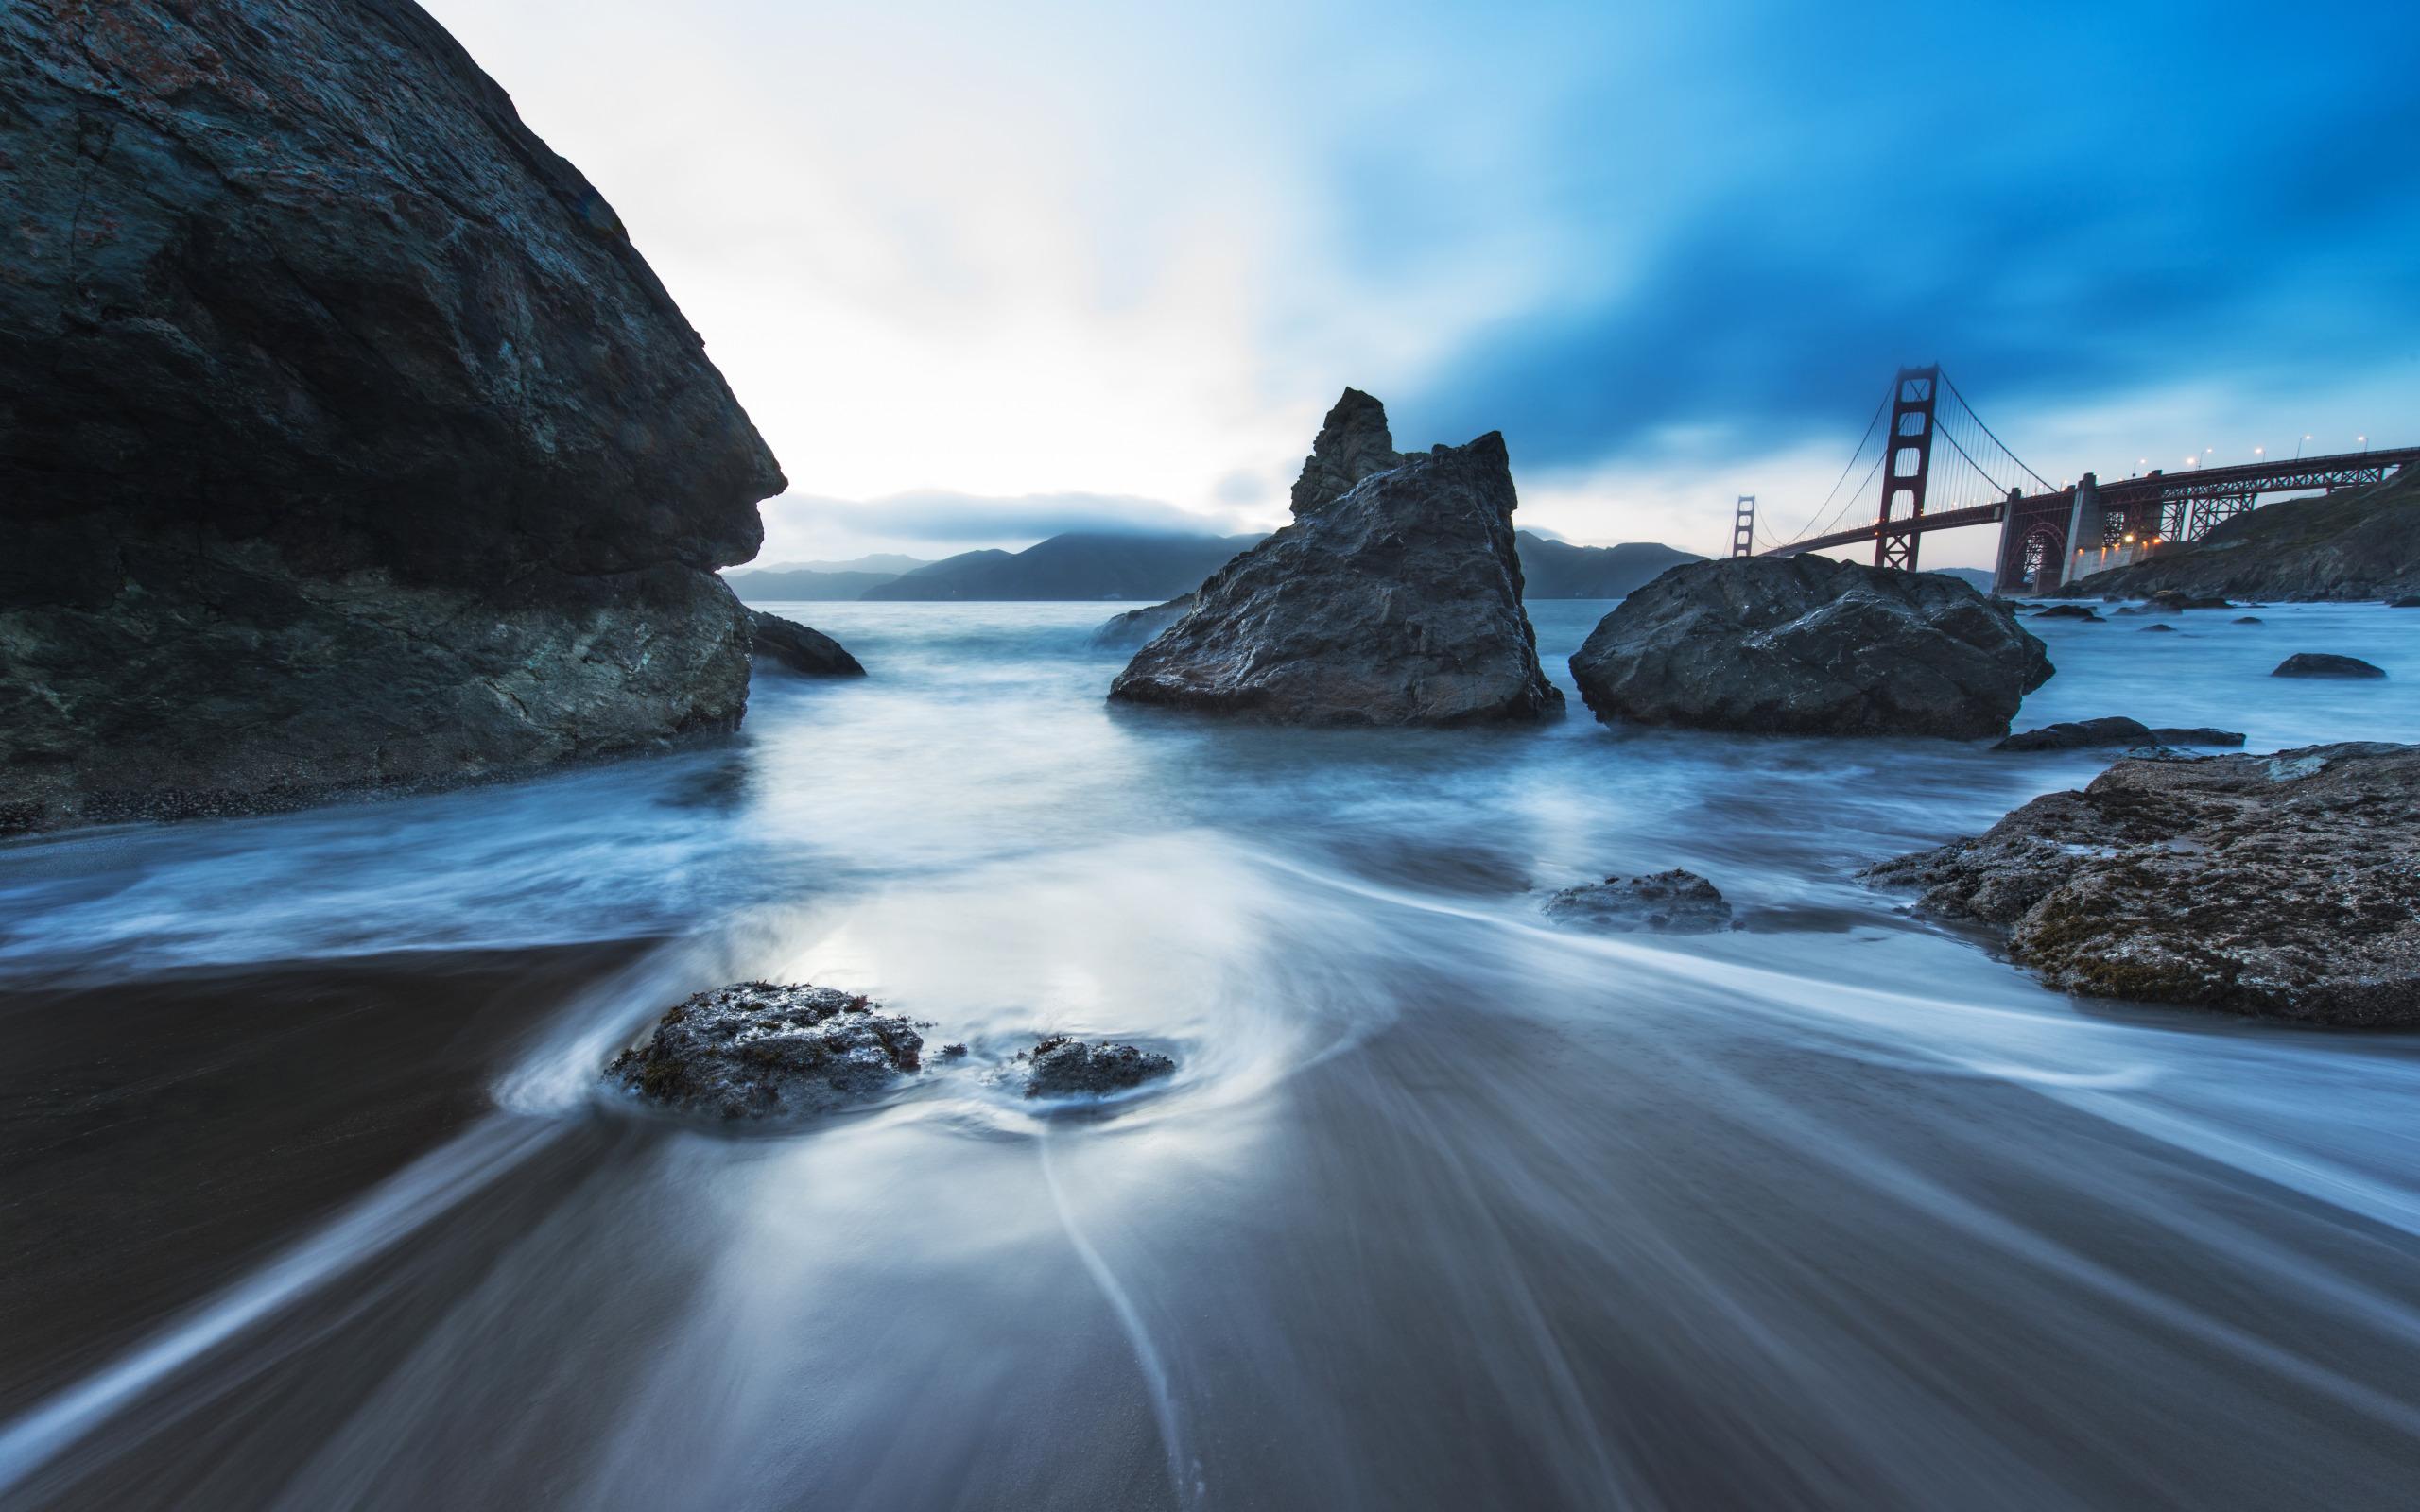 The Golden Gate Bridge seen from Marshall Beach widescreen wallpaper